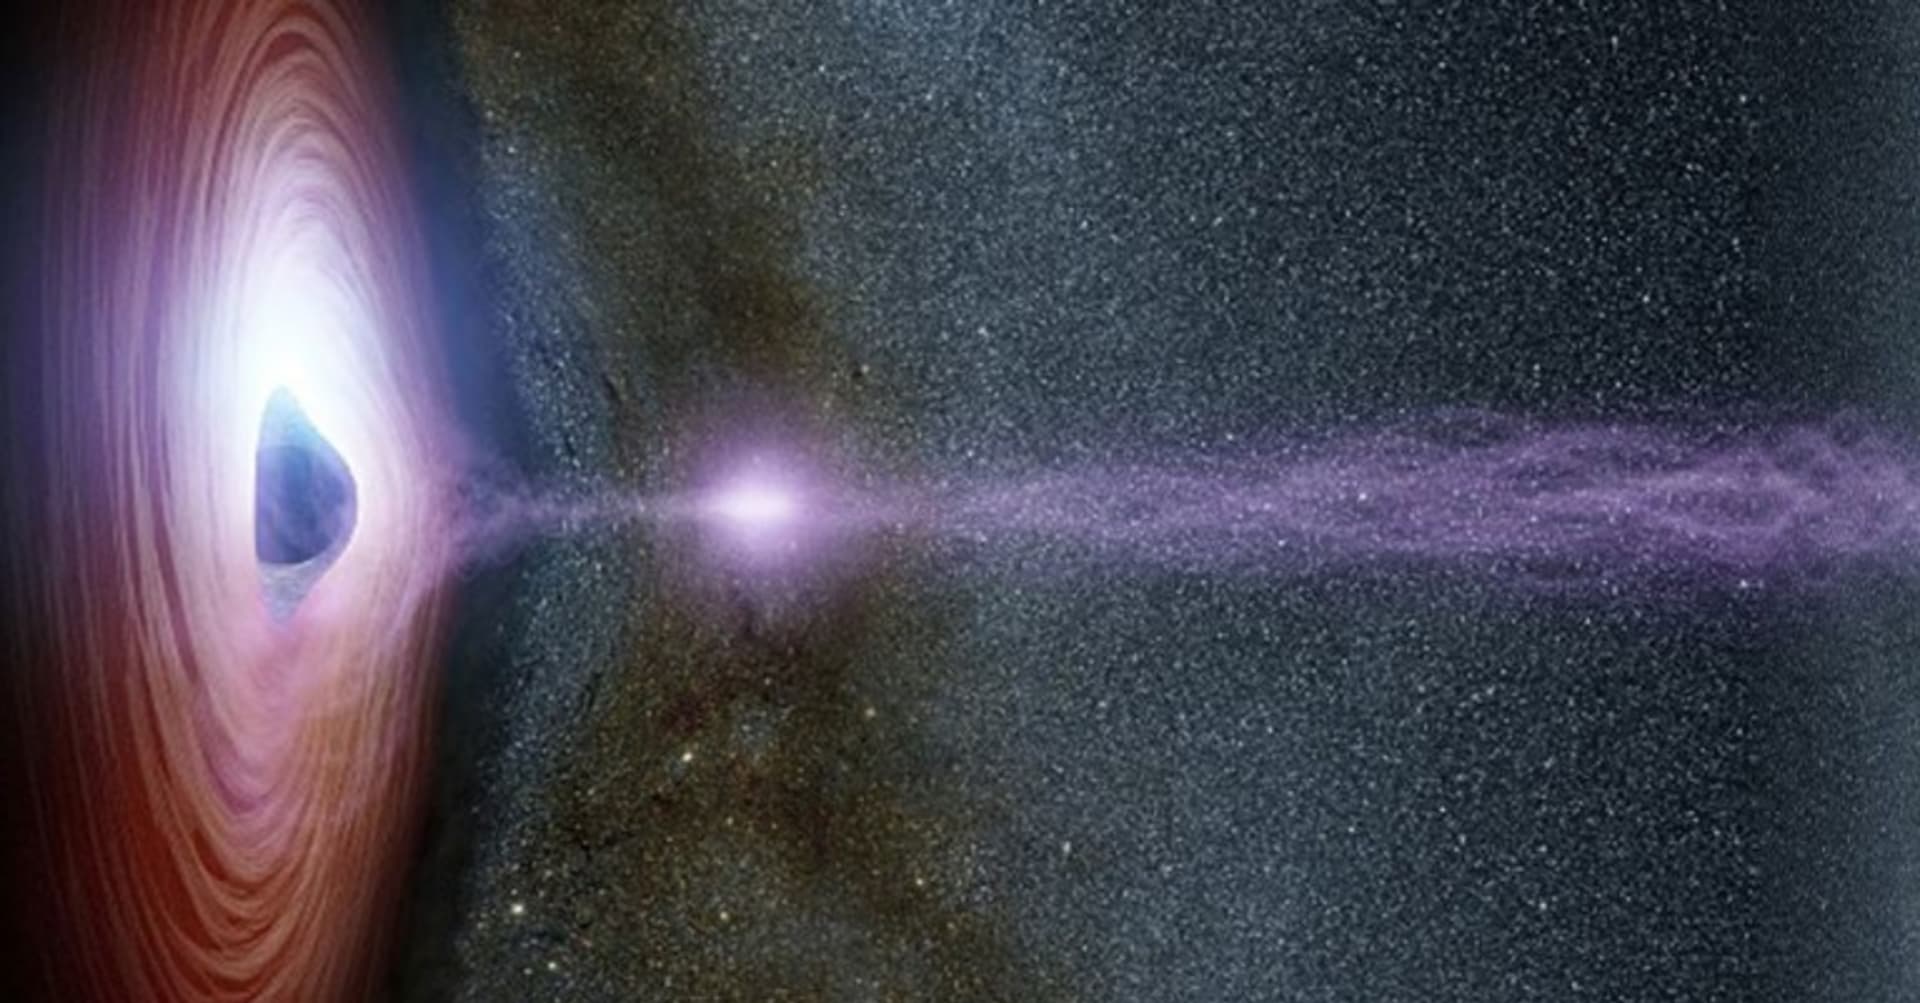 Vesmírný pšouk černé díry Markarian 335